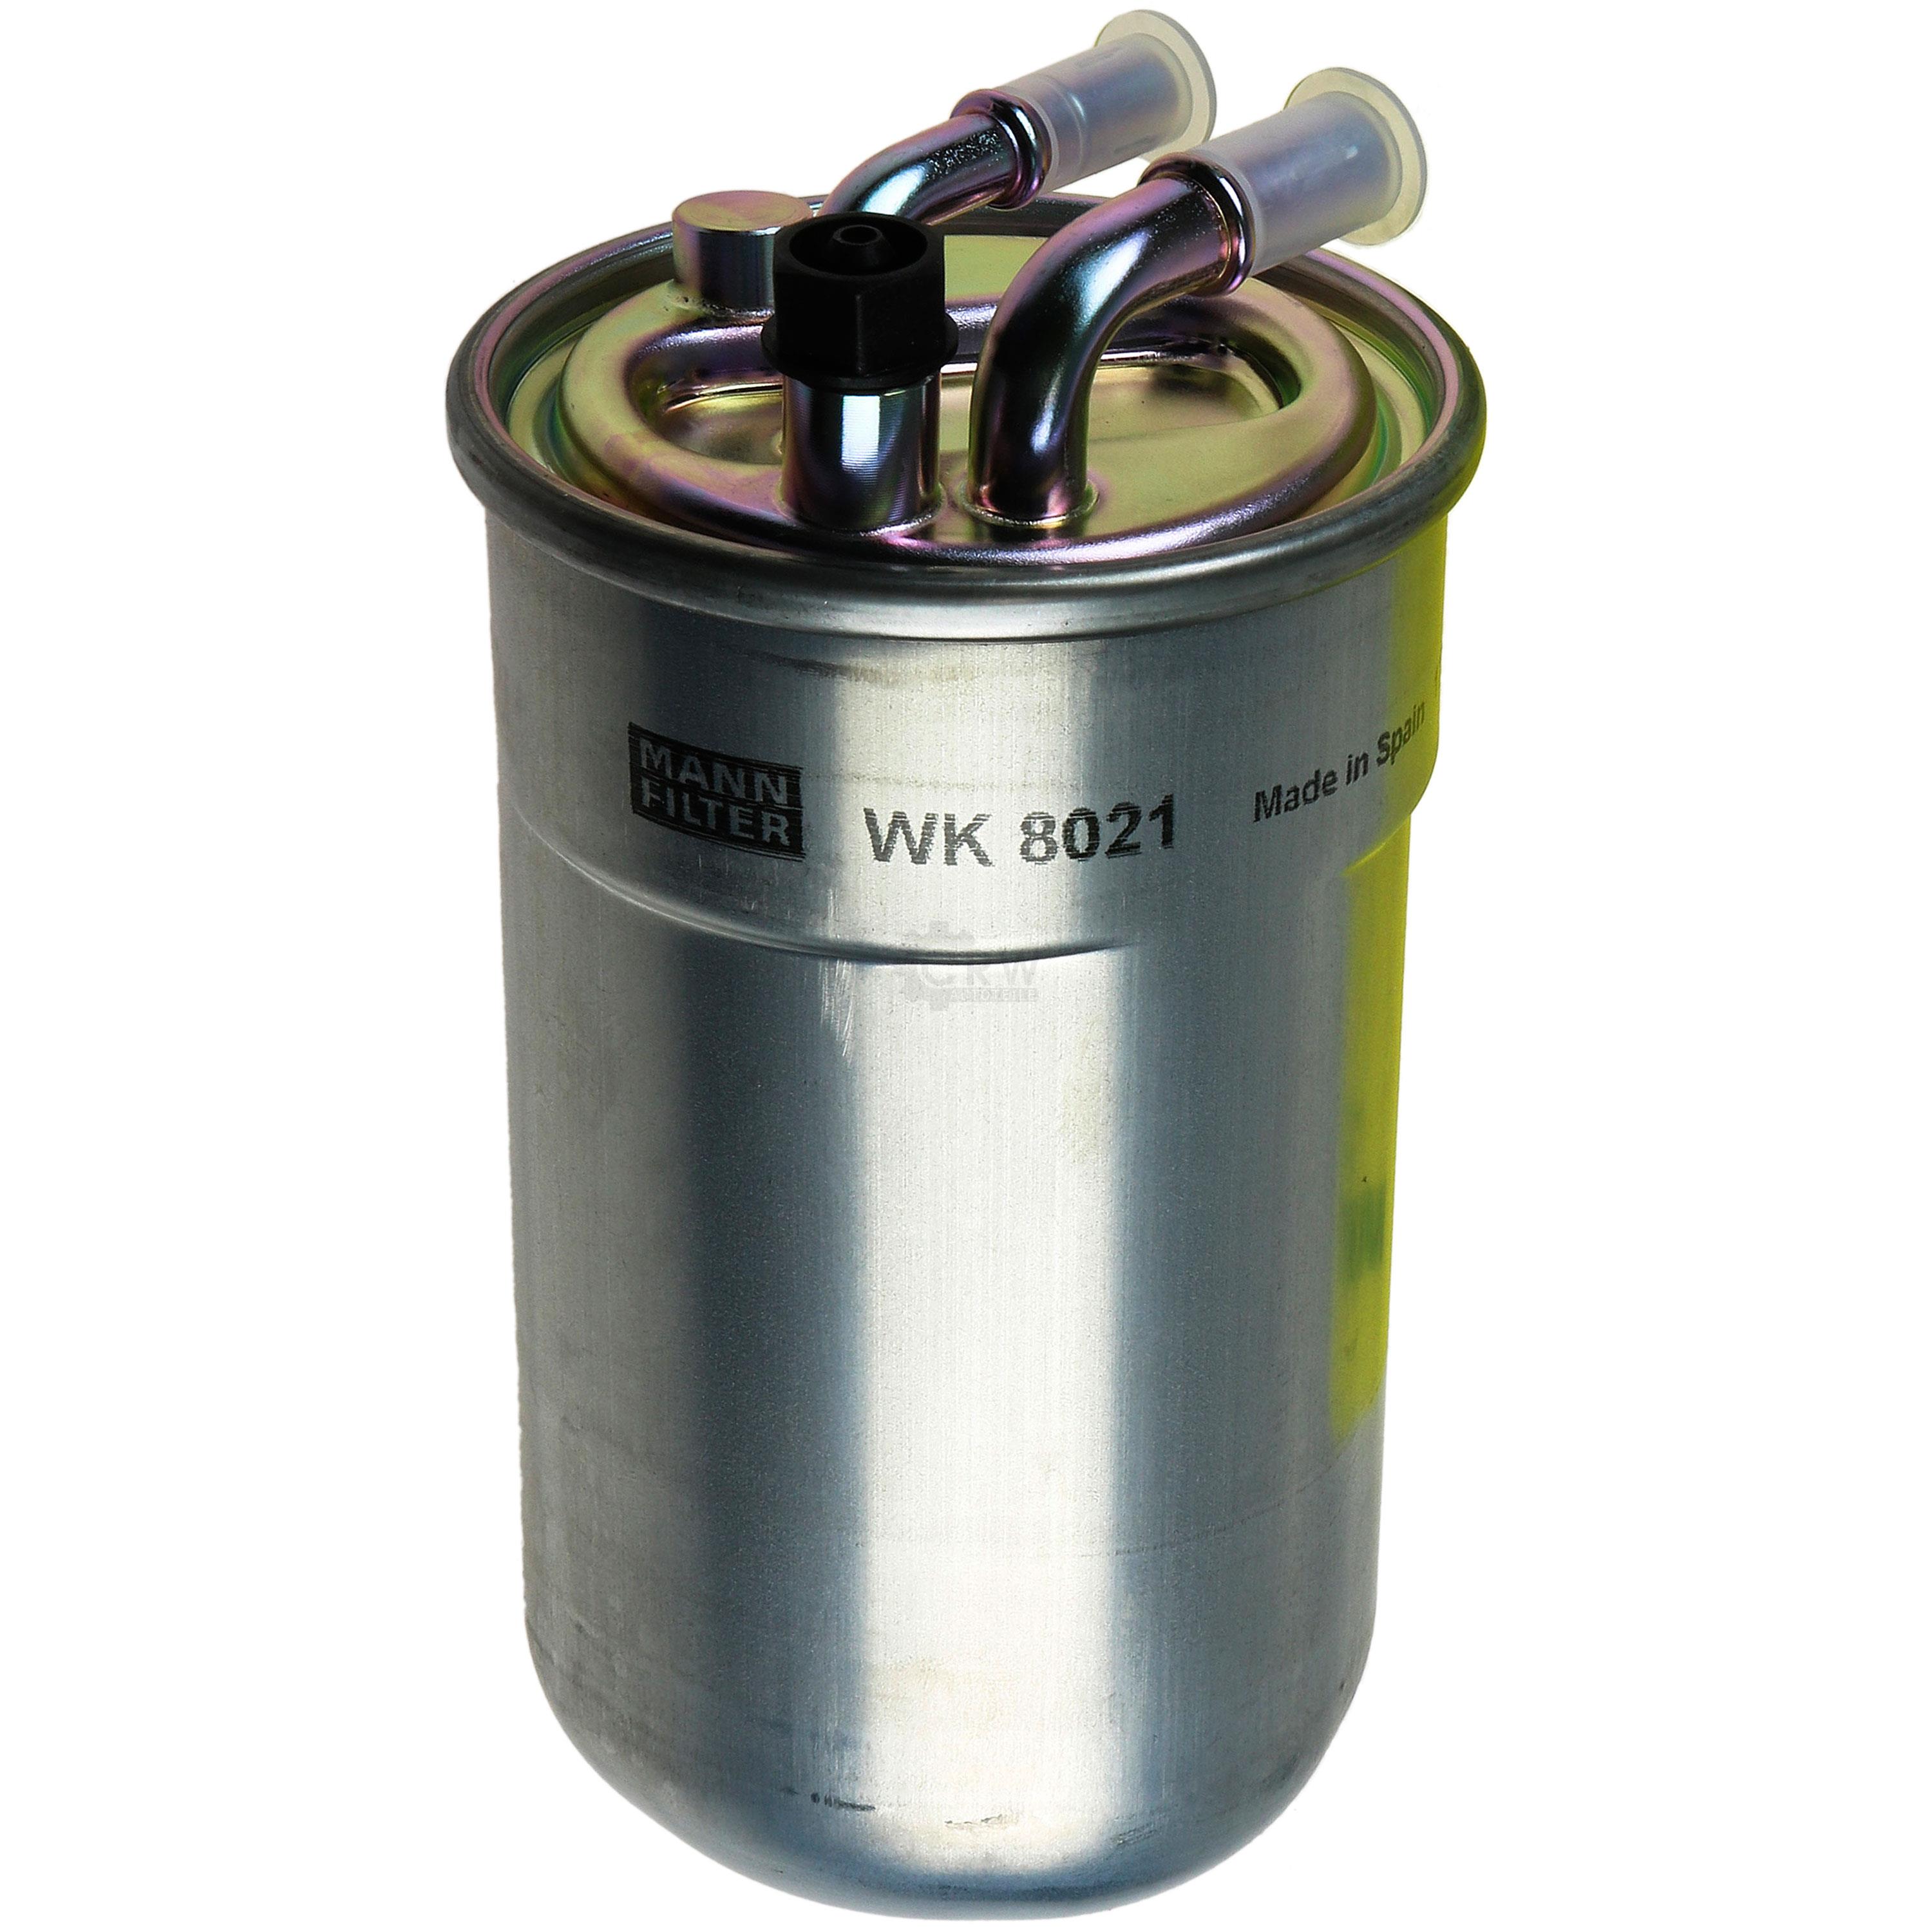 MANN-FILTER Kraftstofffilter WK 8021 Fuel Filter